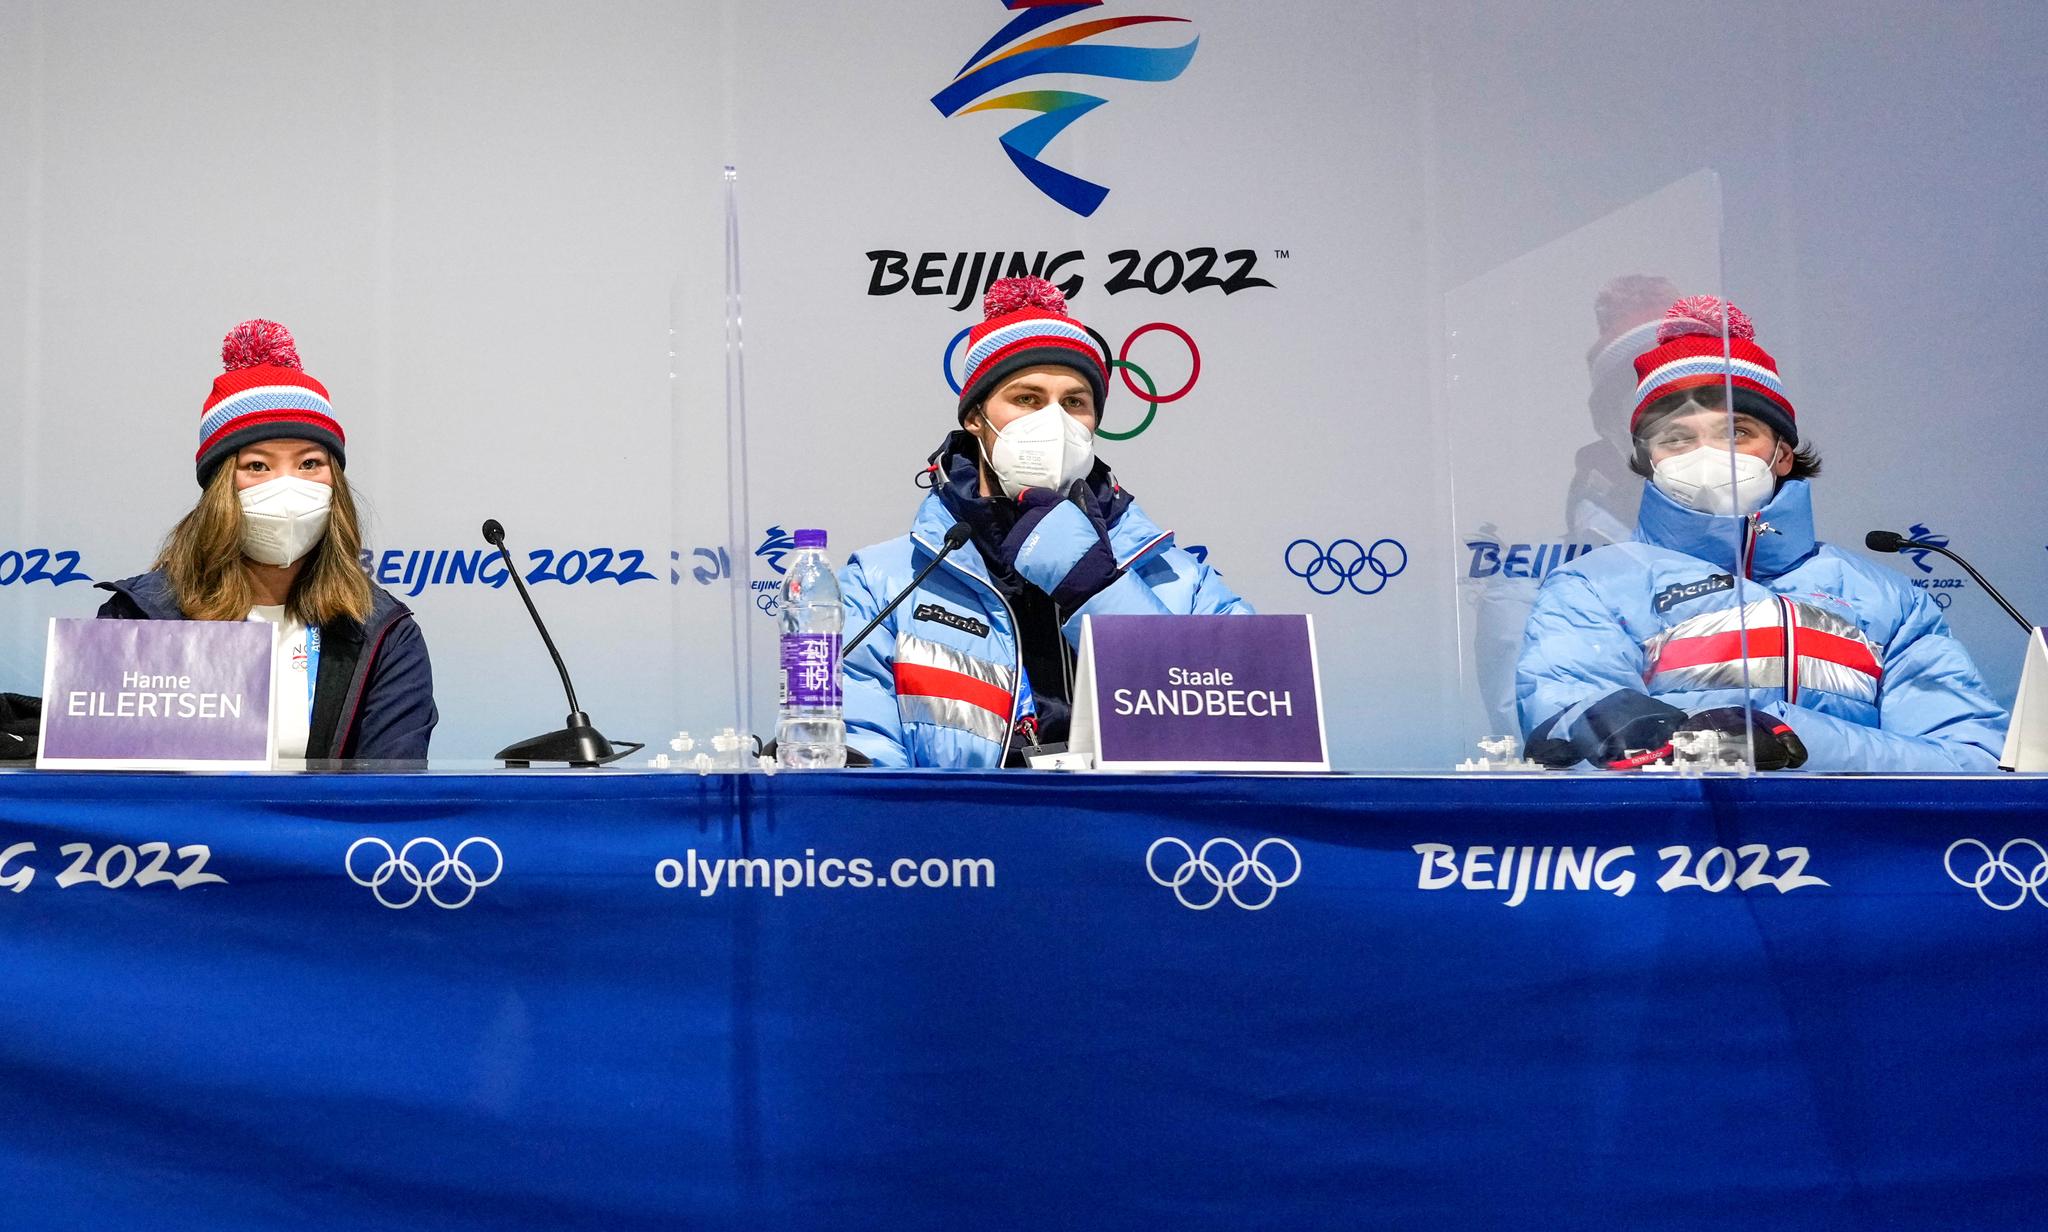 KREVENDE OL: Hanne Eilertsen (fra venstre), Ståle Sandbech og Marcus Kleveland under et pressetreff i OL i februar. 